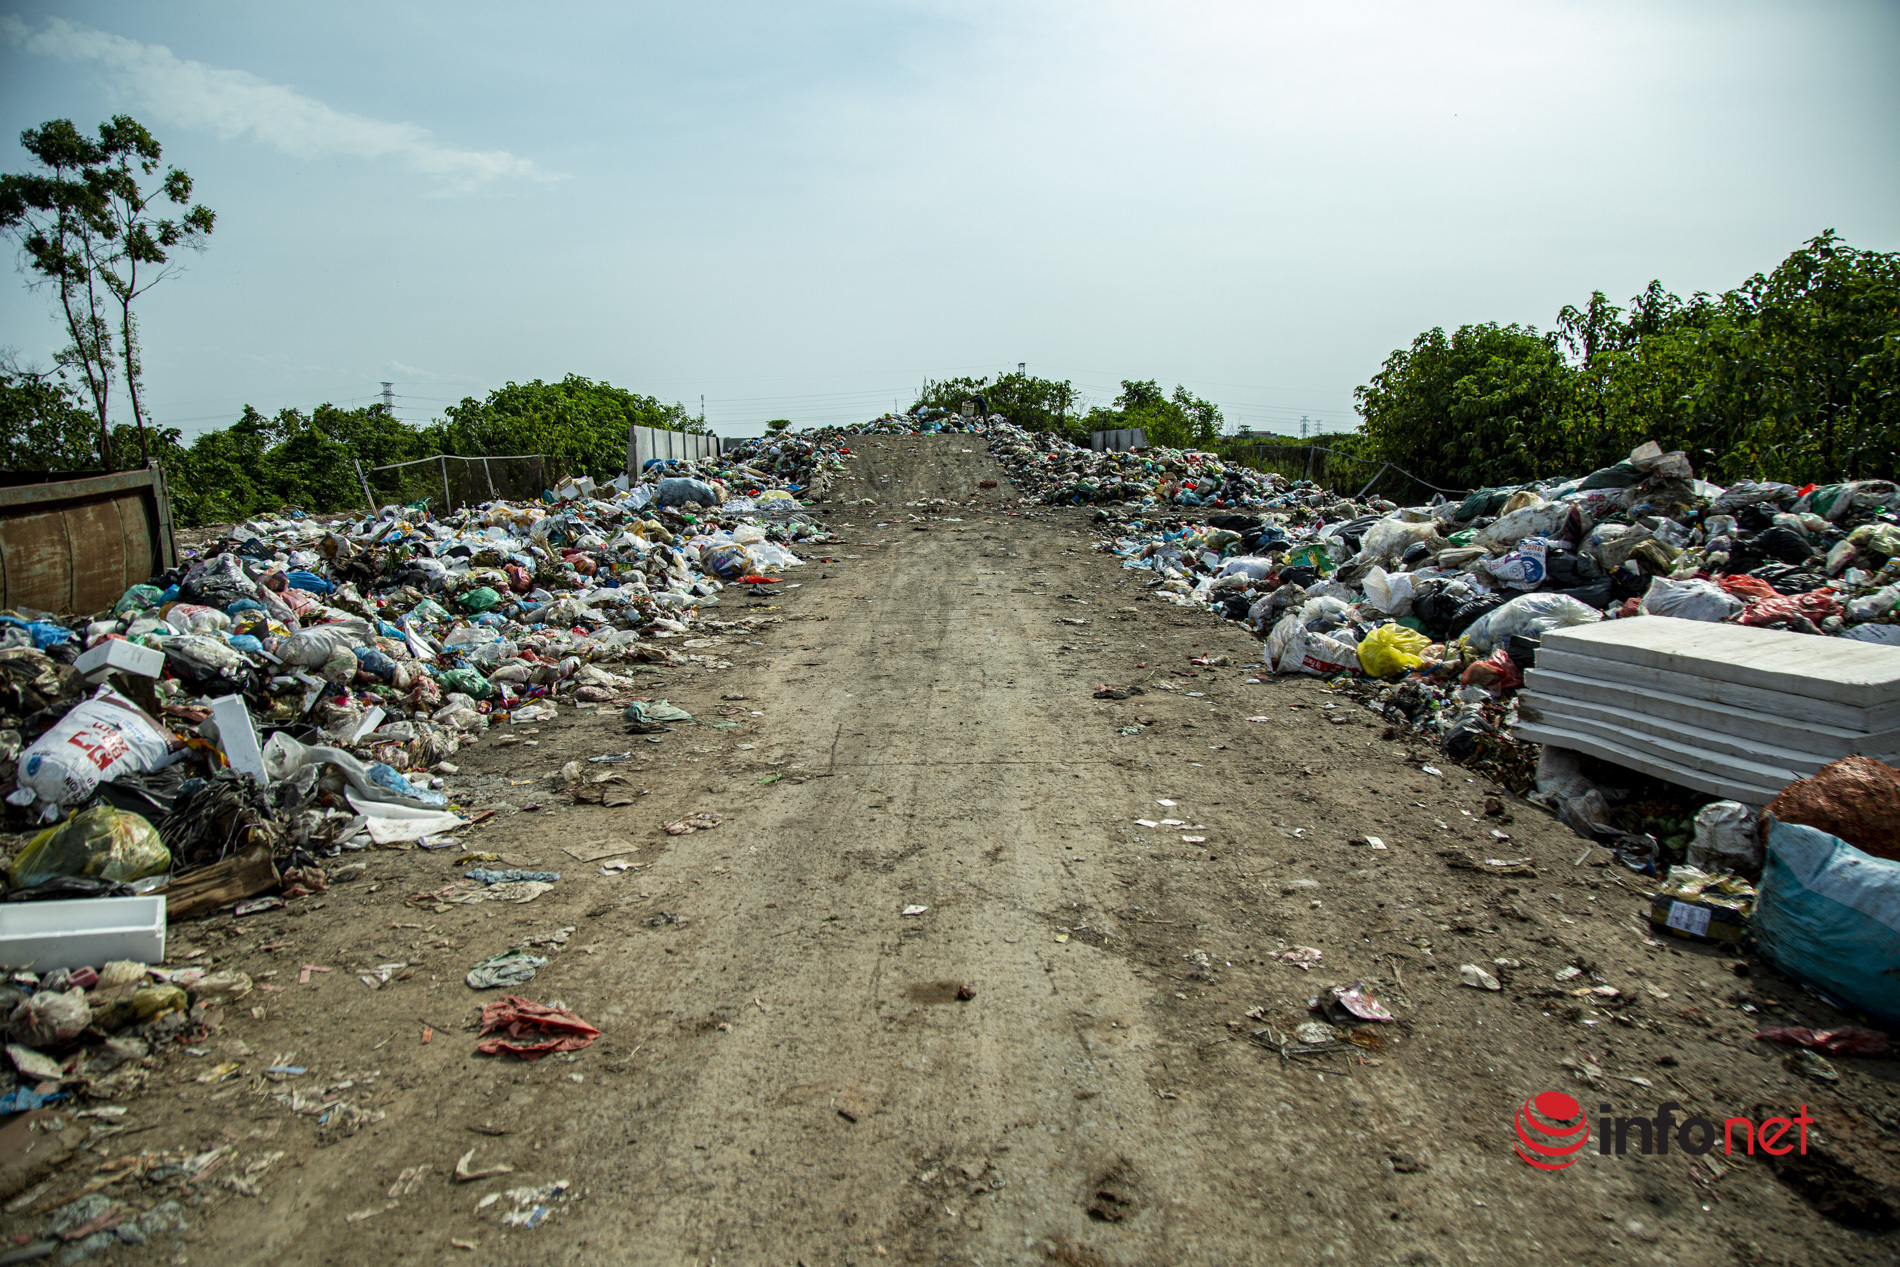 Sau phản ánh của Infonet, “núi” rác thải tại điểm trung chuyển ở Hà Nội đã được dọn dẹp